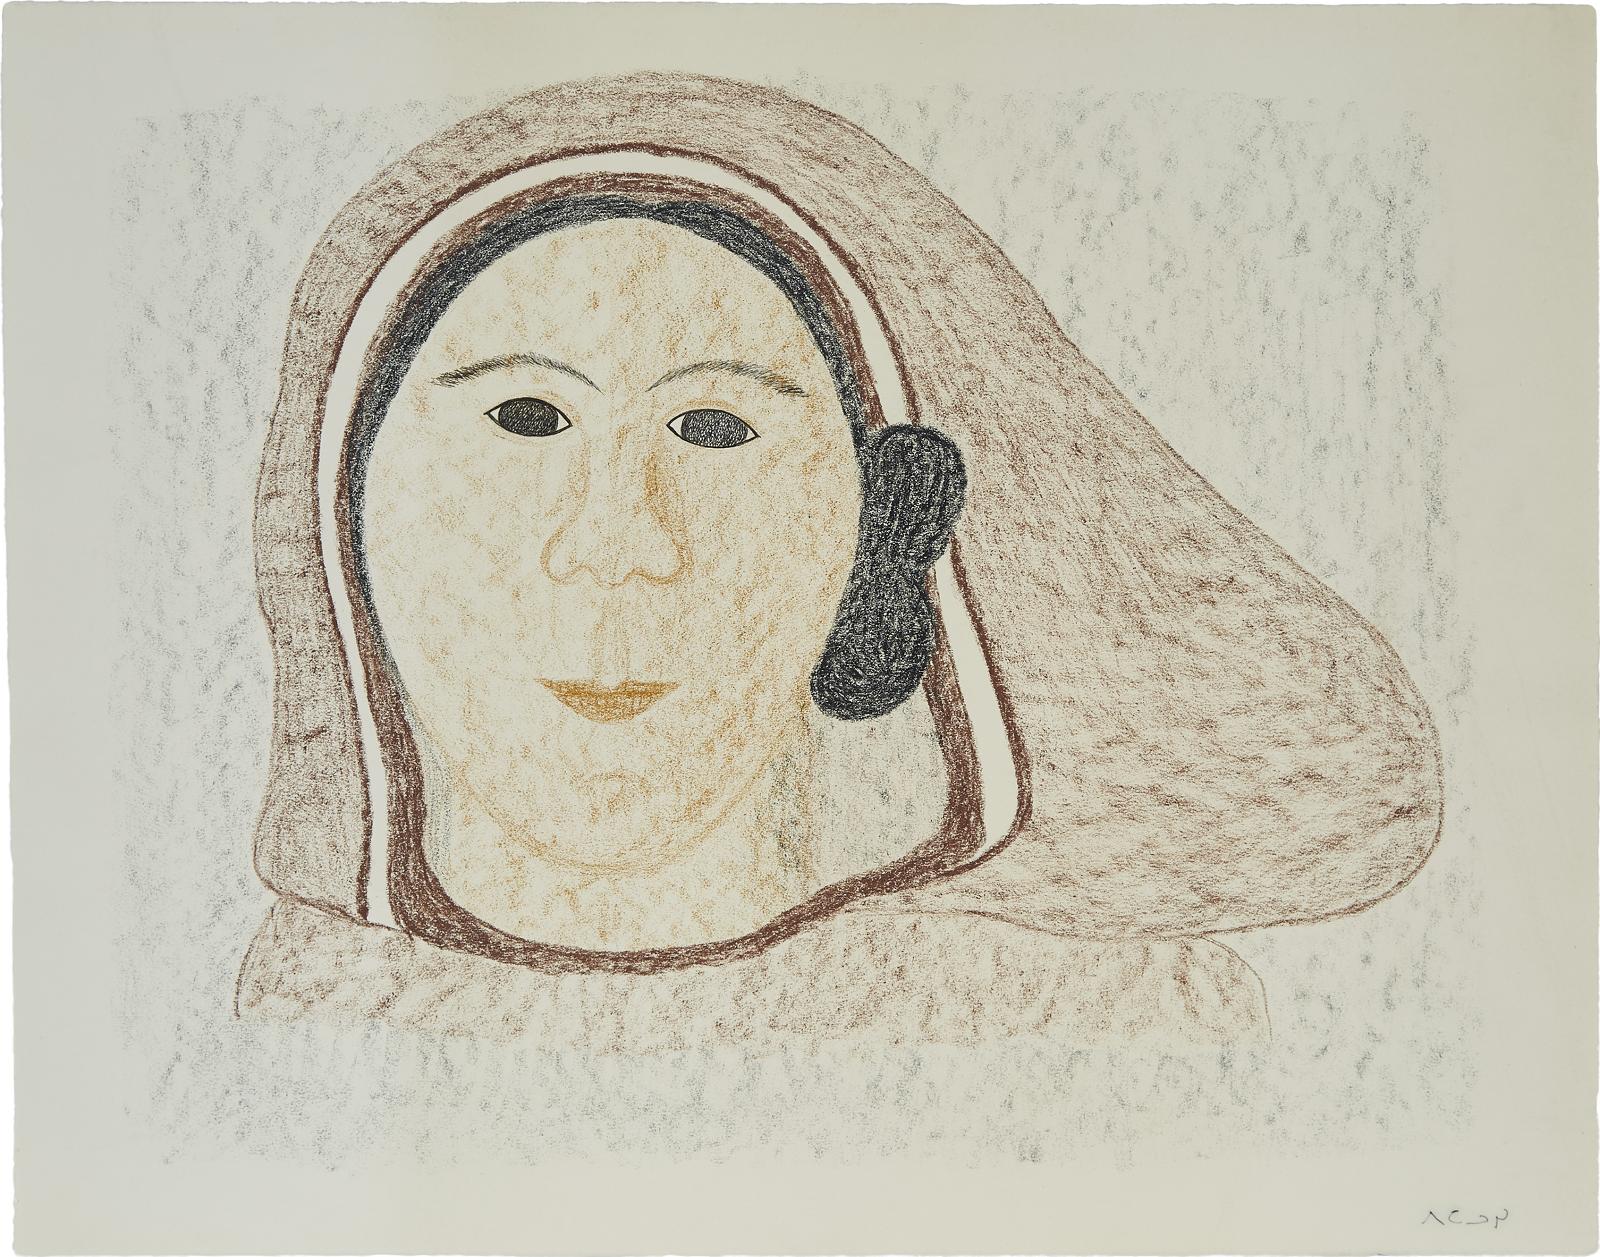 Pitaloosie Saila (1942-2021) - Hooded Woman